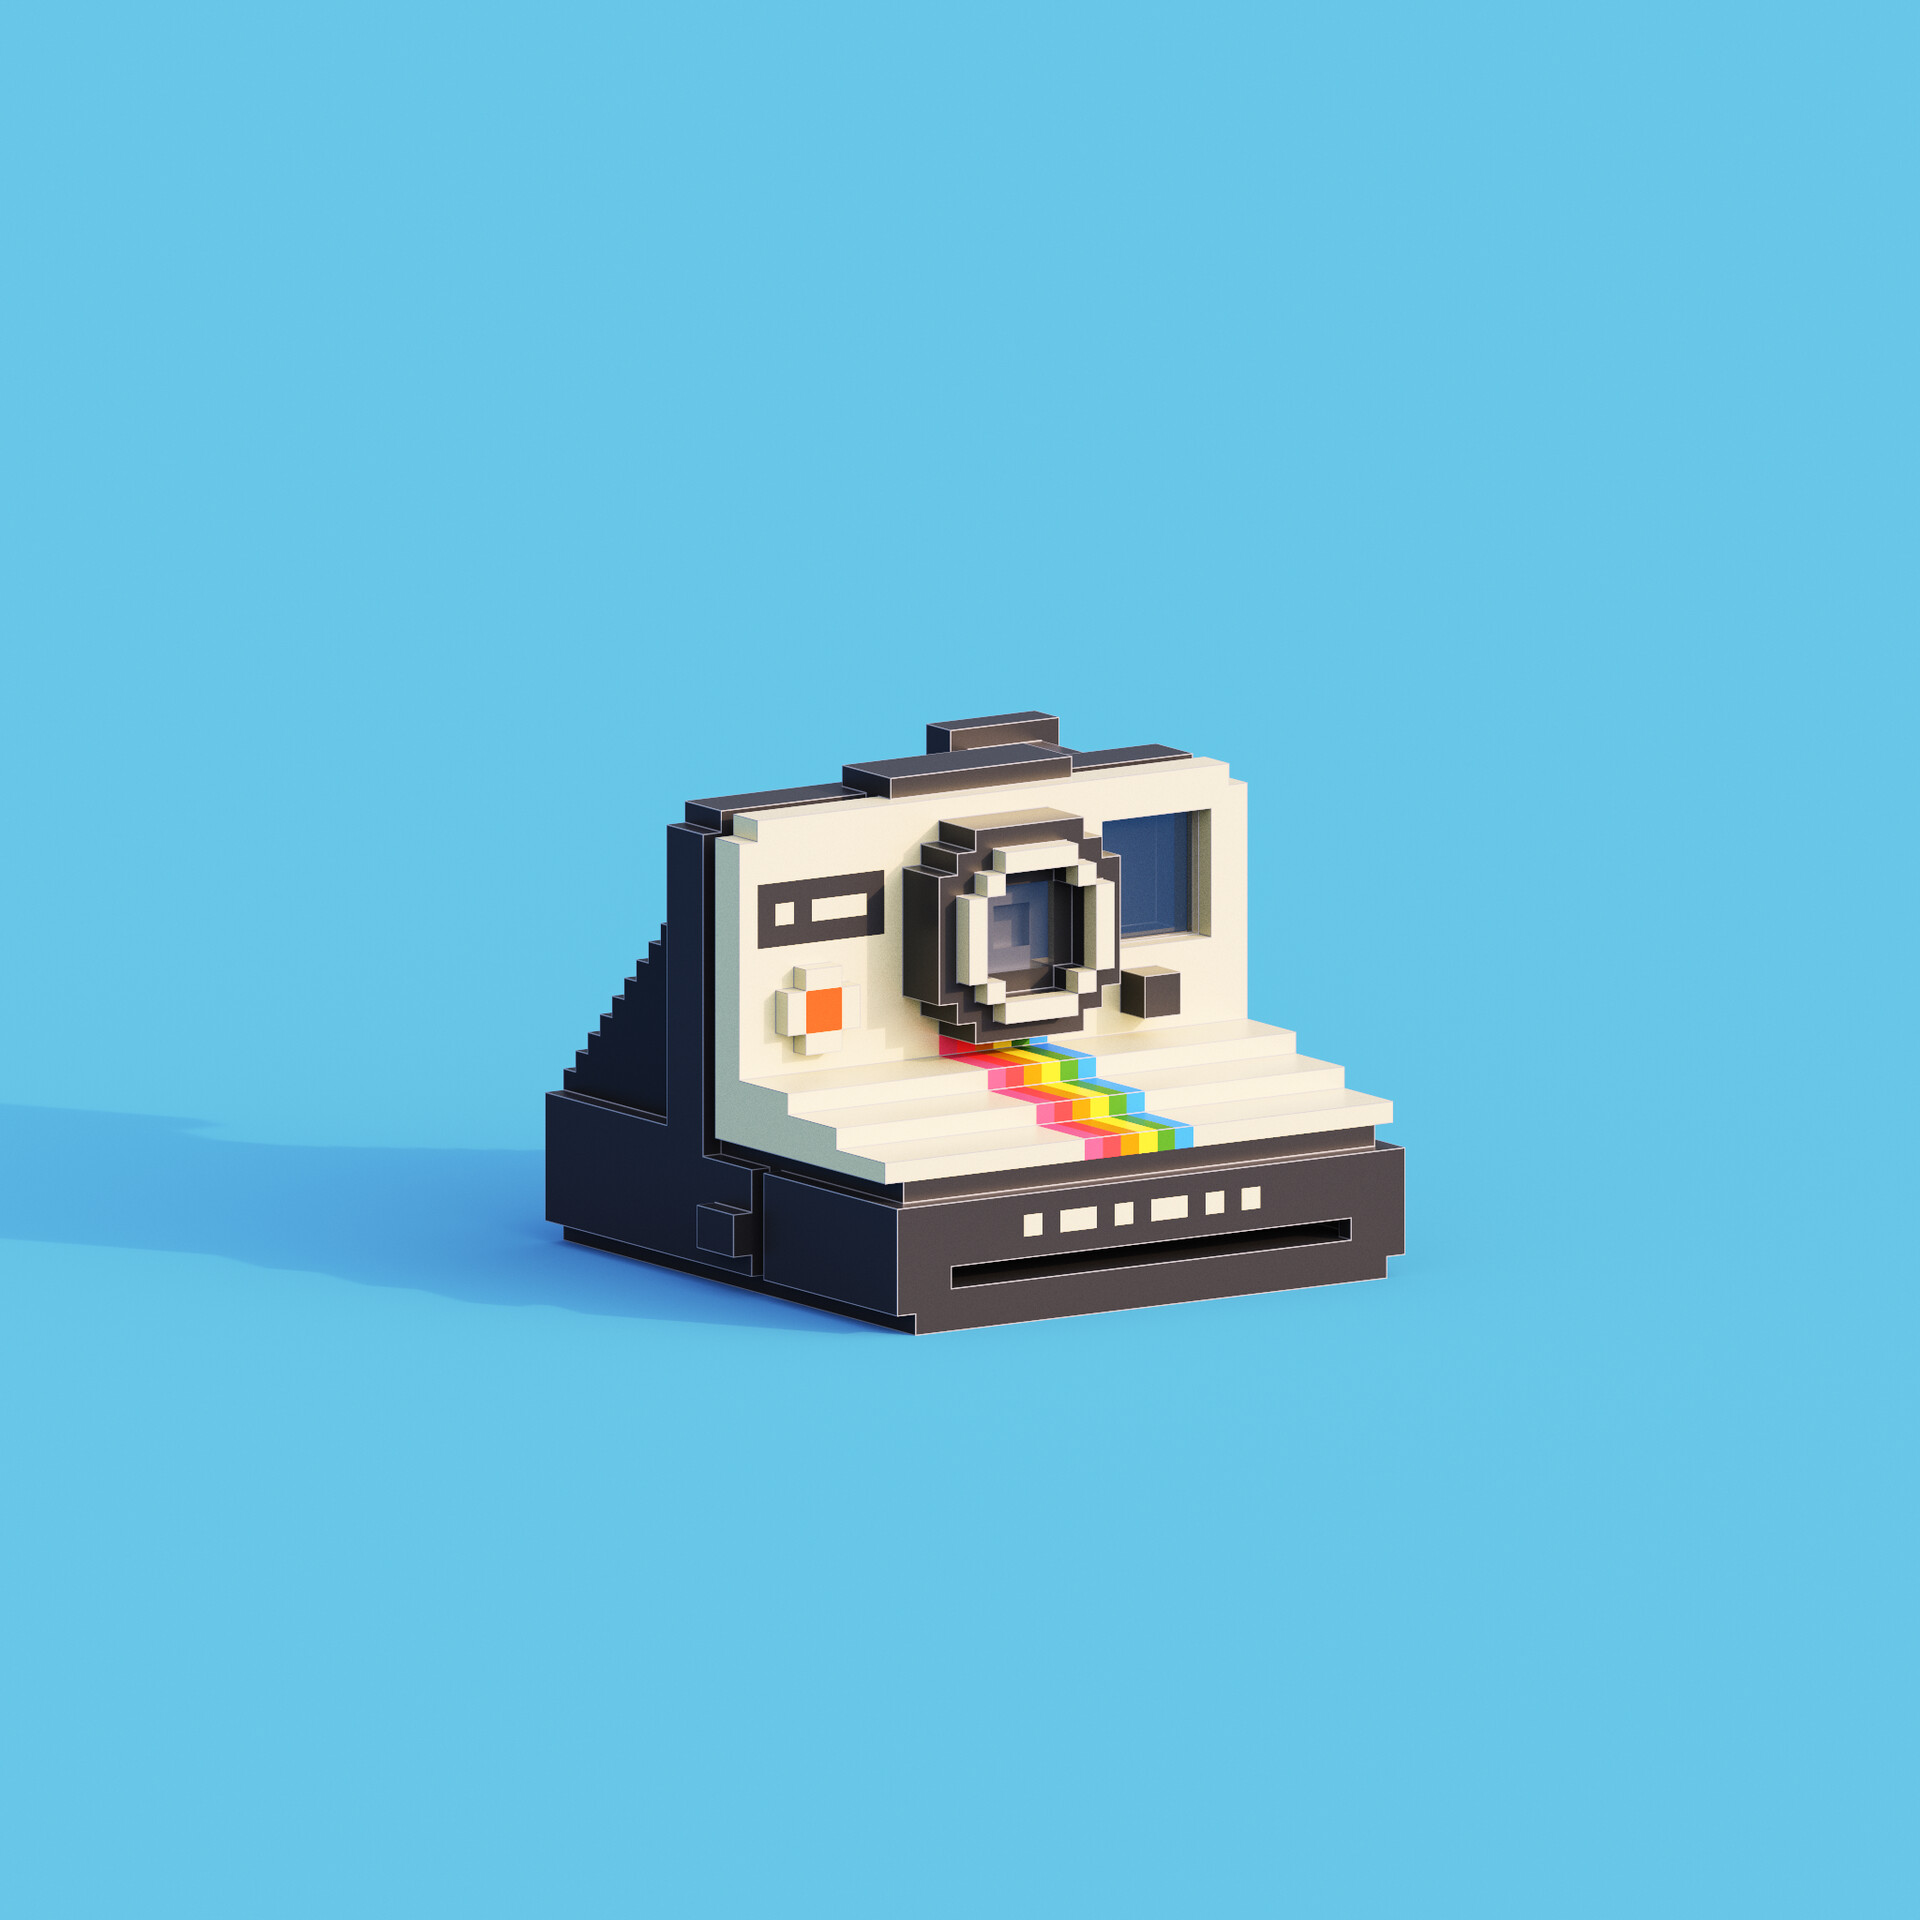 ArtStation - Polaroid camera